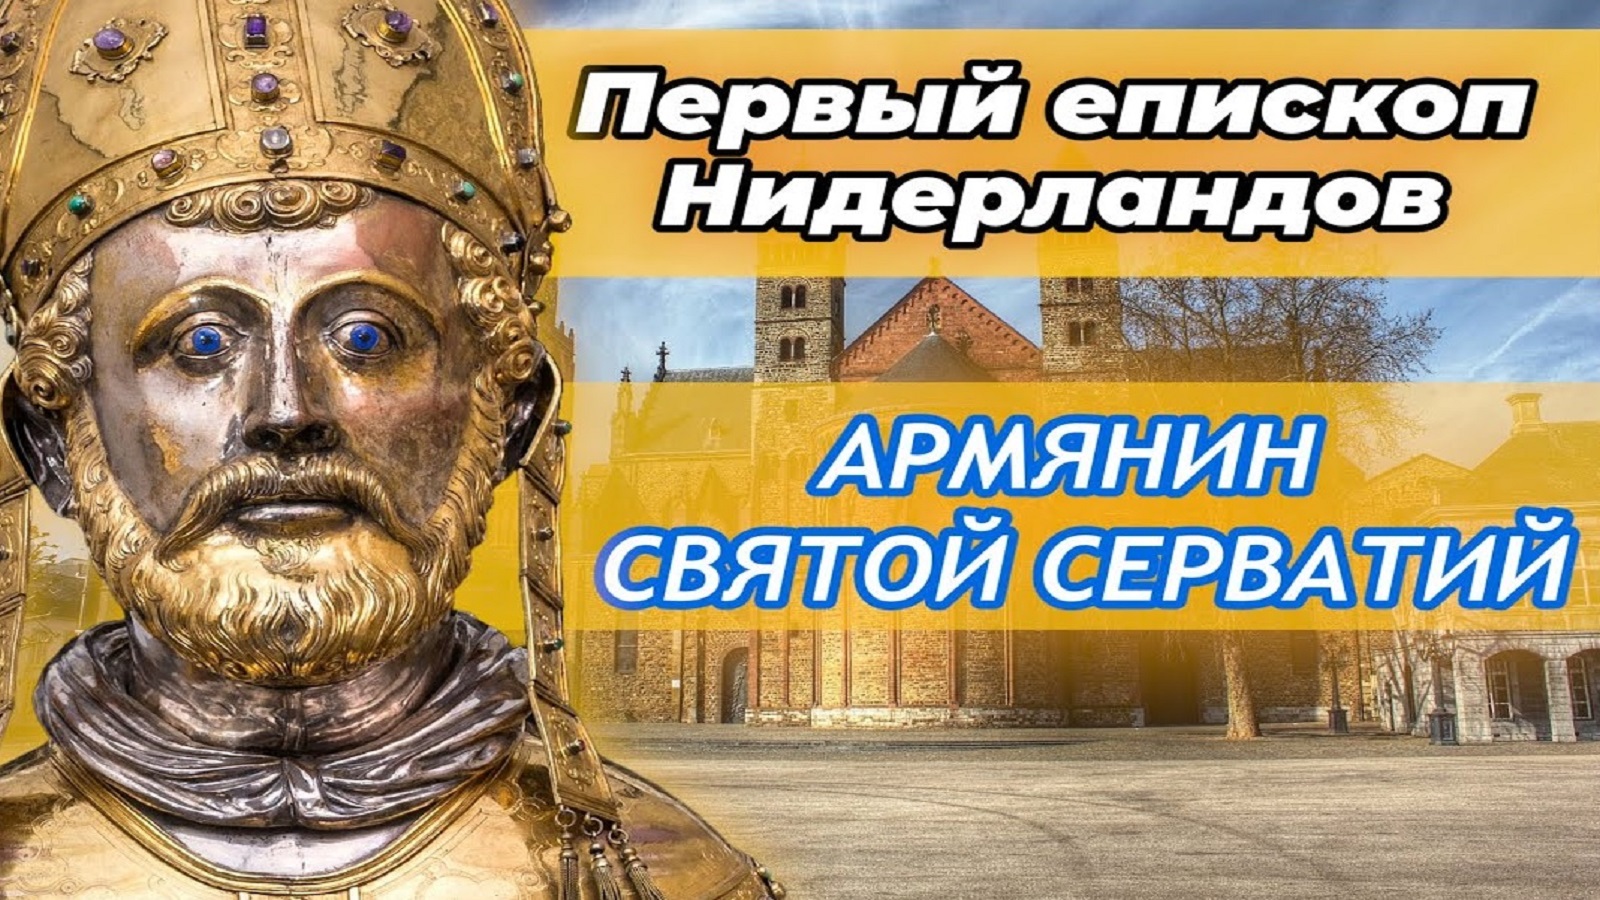 Армянин Святой Серватий — первый Епископ Нидерландов